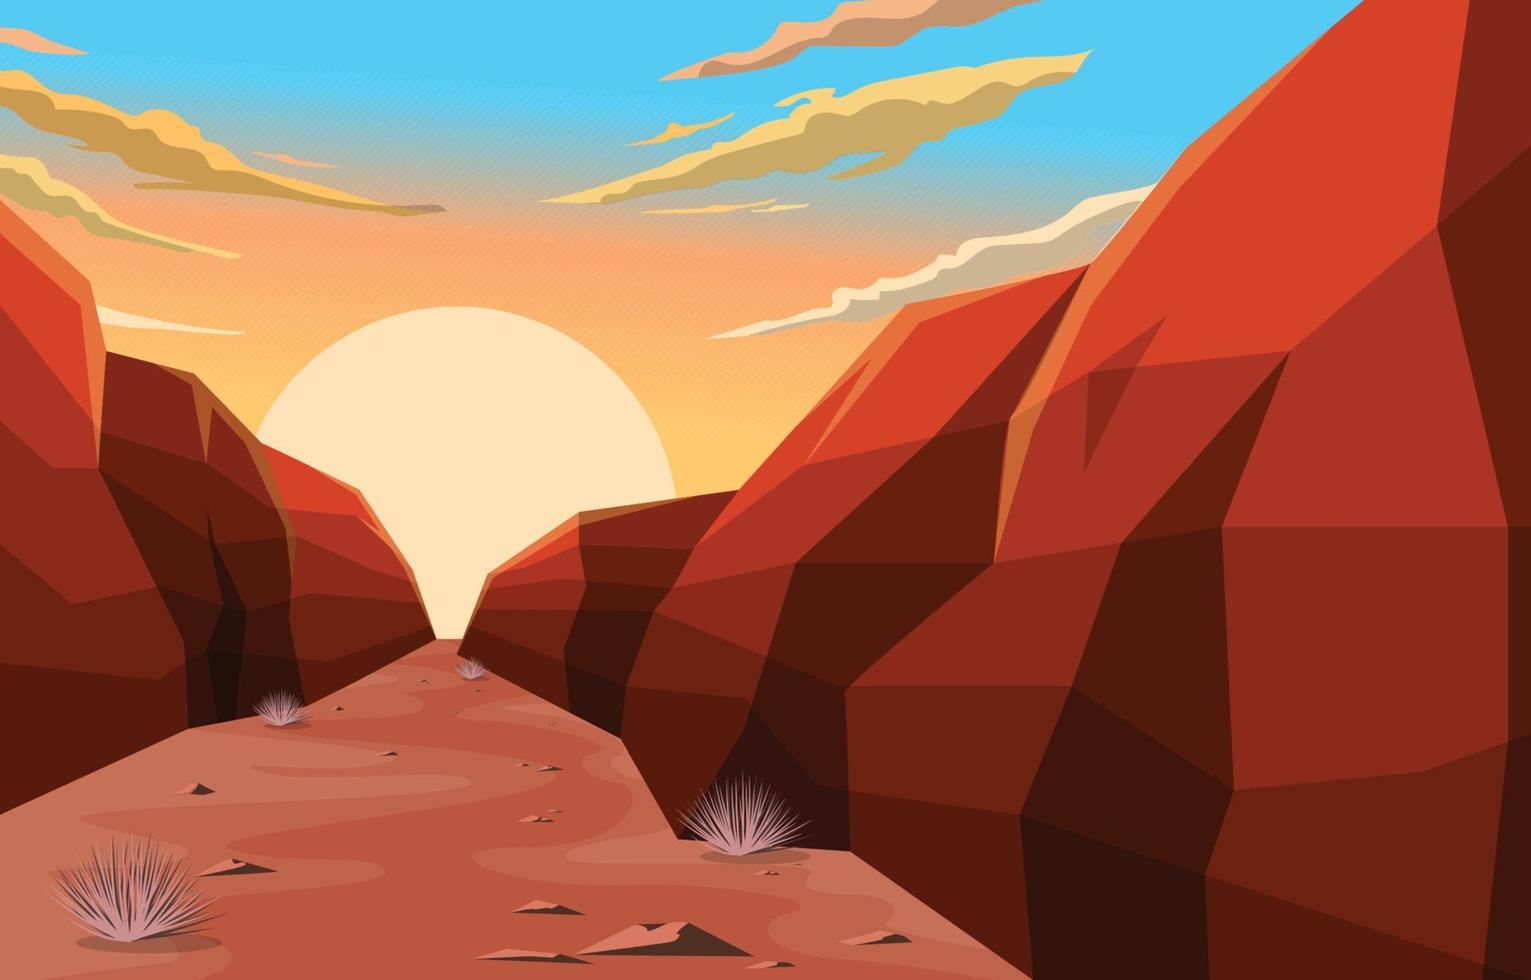 soluppgång i västra amerikanska rock cliff stora öken landskap illustration vektor